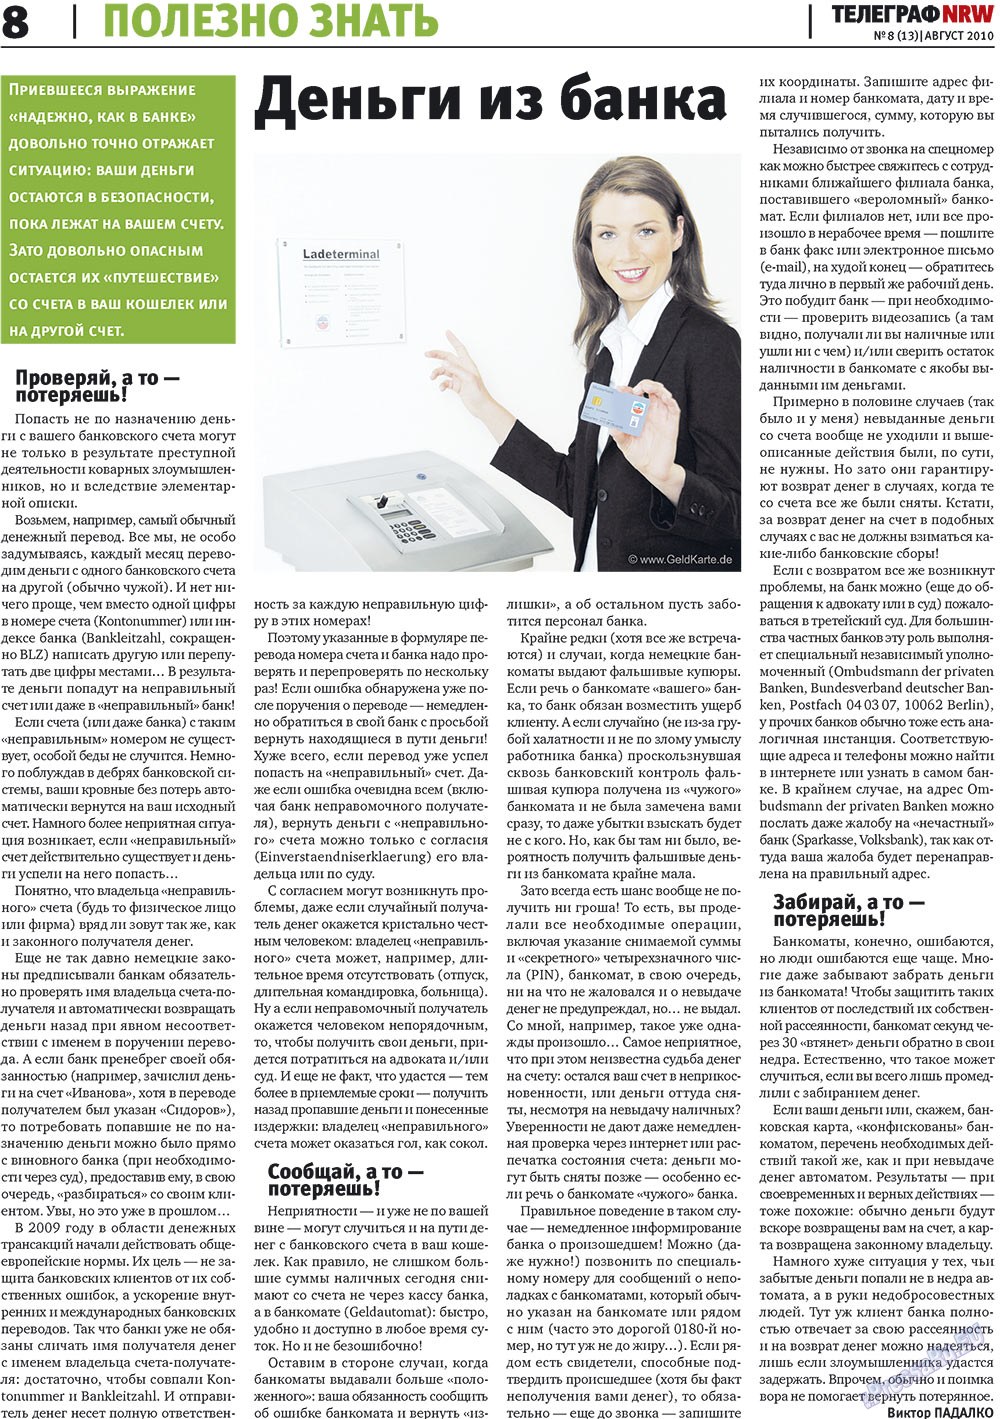 Telegraf NRW (Zeitung). 2010 Jahr, Ausgabe 8, Seite 8